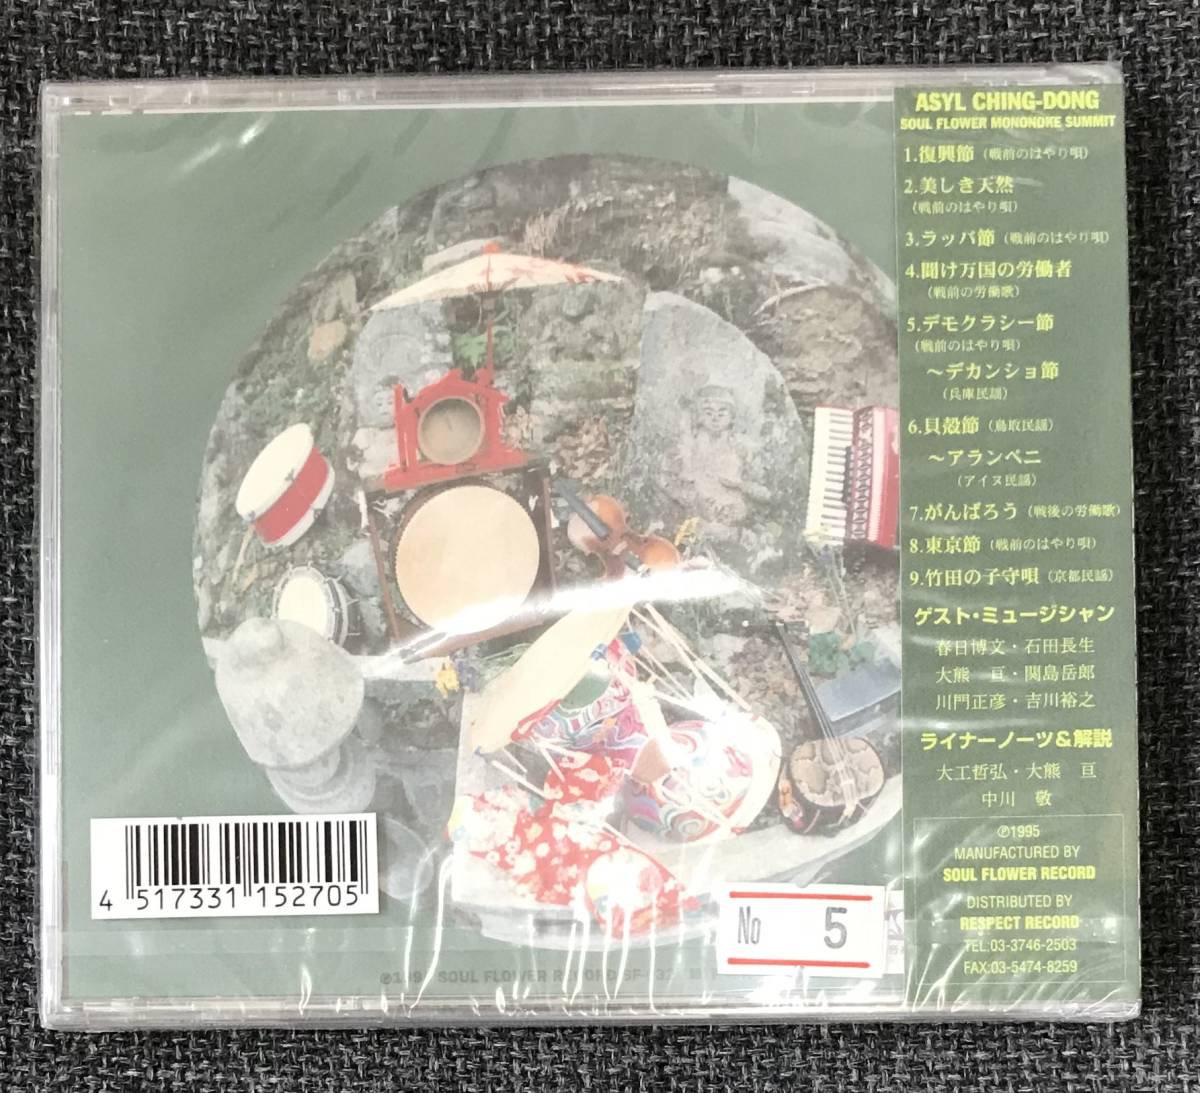 新品未開封CD☆SOUL FLOWER MONONOKE SUMMIT .アジール・チンドン..(1999/12/08)/ RES6..